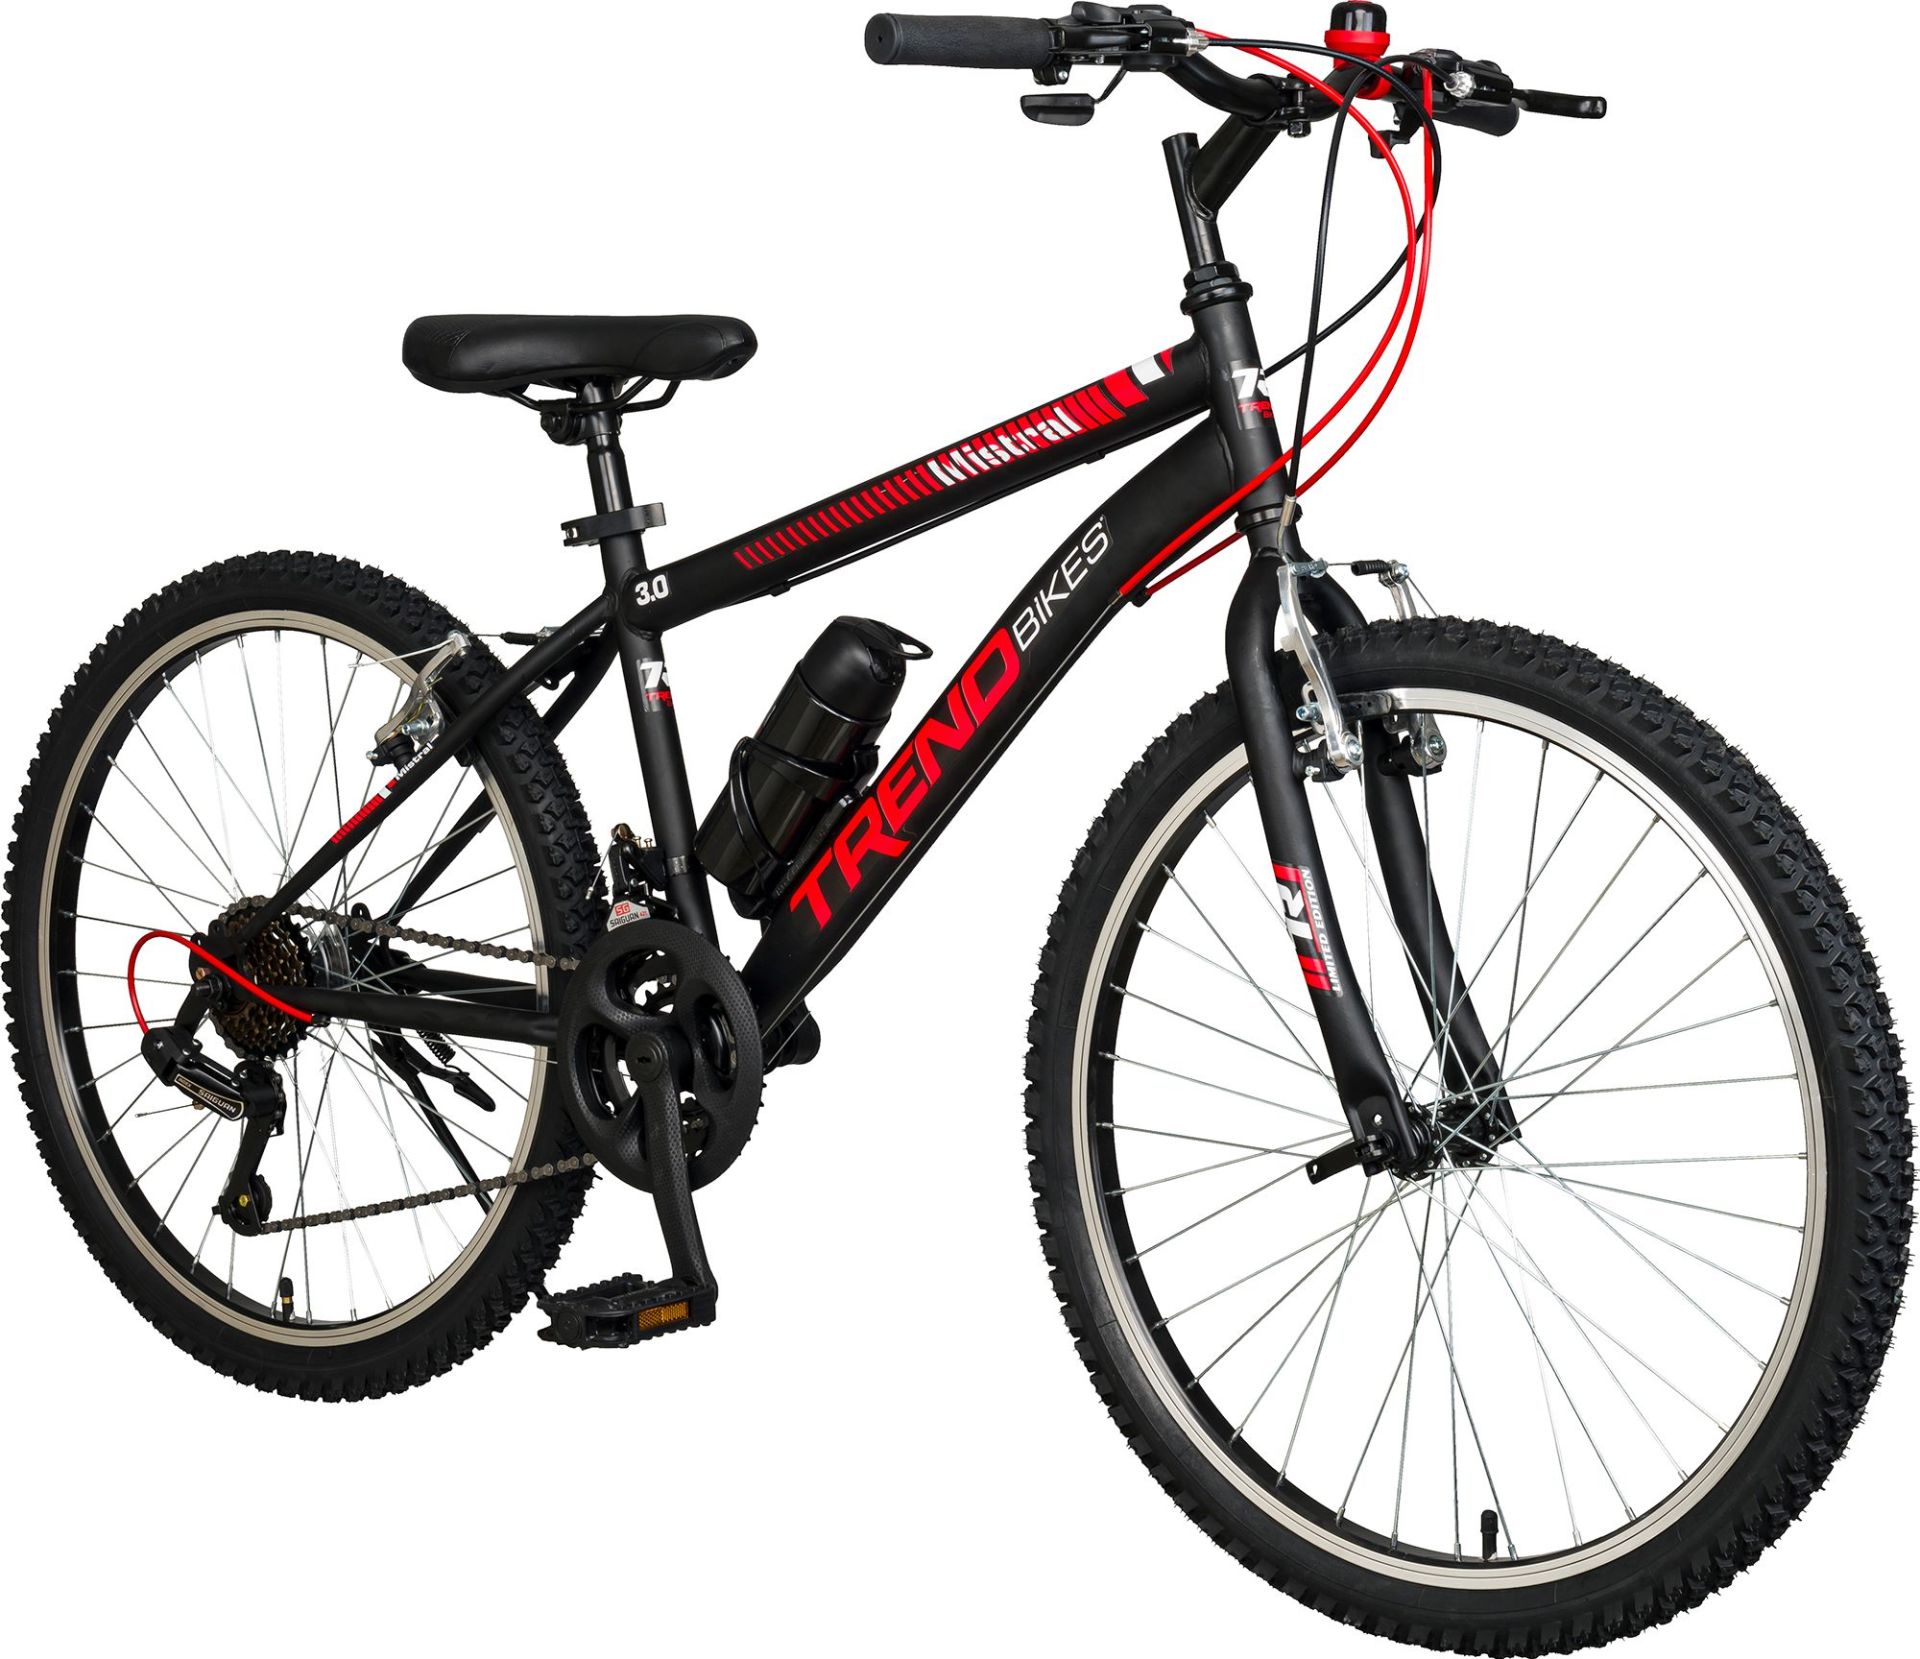 Trendbisiklet Mistral 24 Jant Dağ Bisikleti, 21 Vites Micro Shift, Dağ Bisikleti